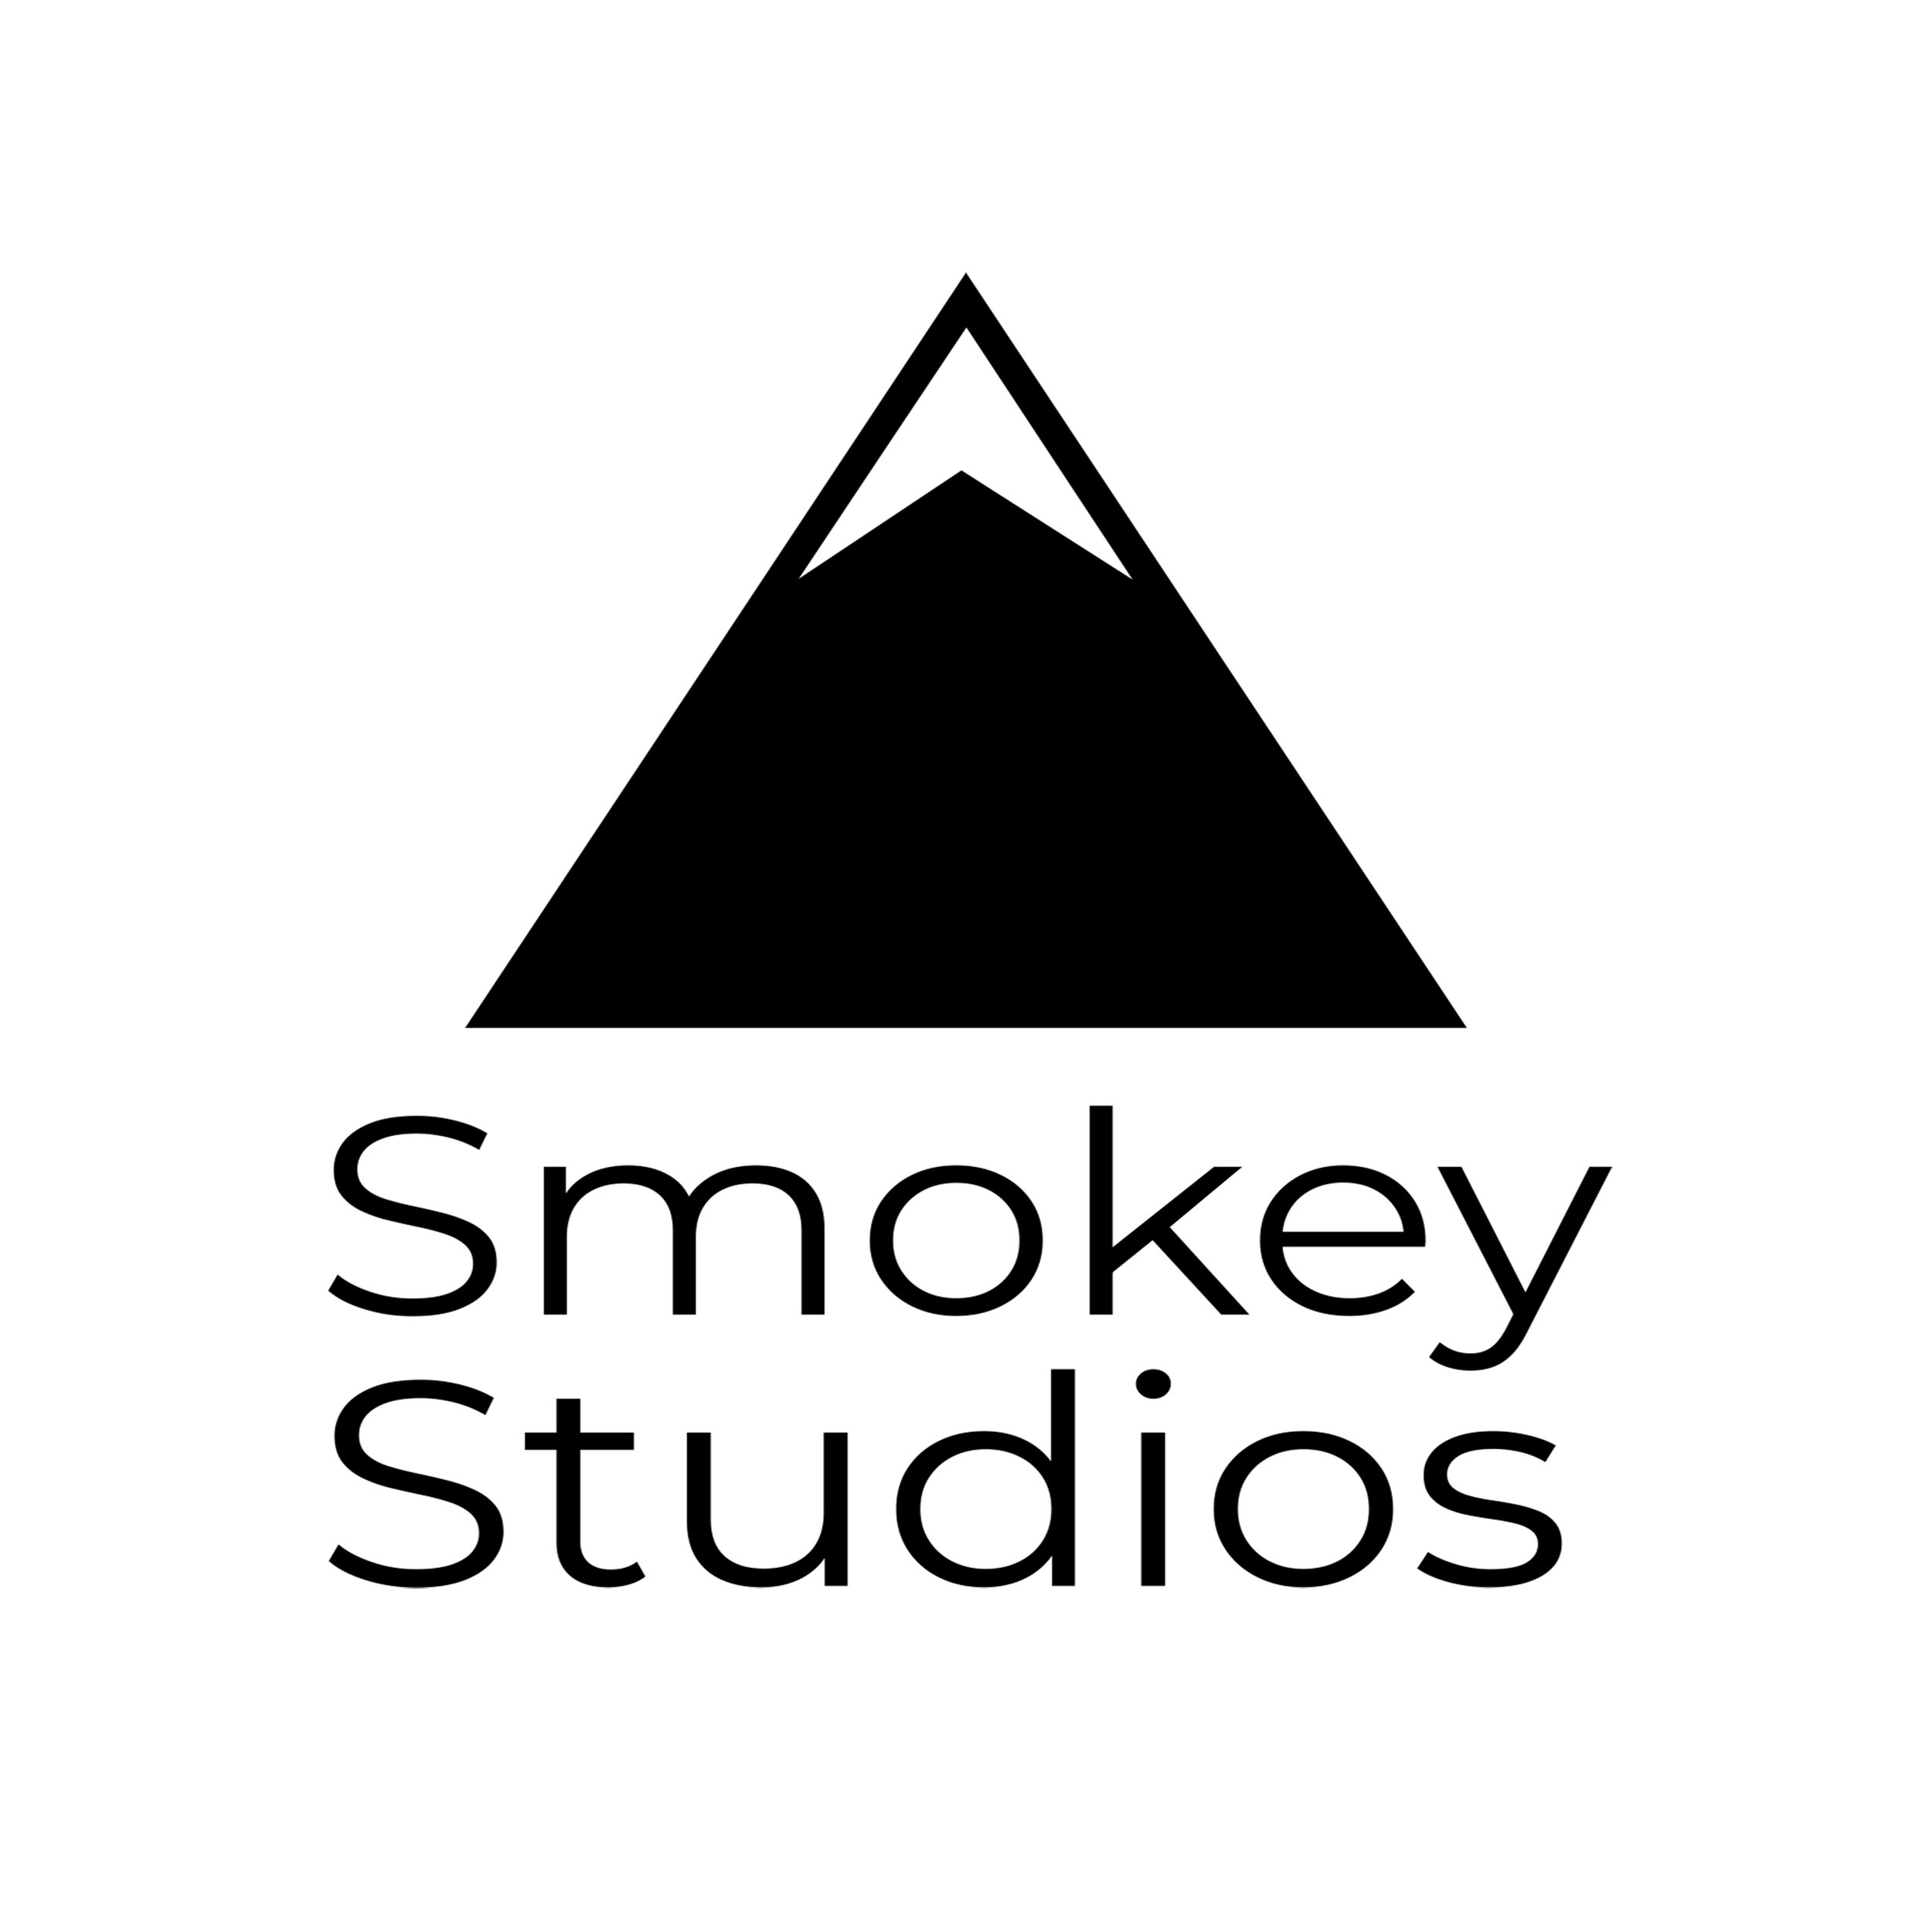  Smokey Studios